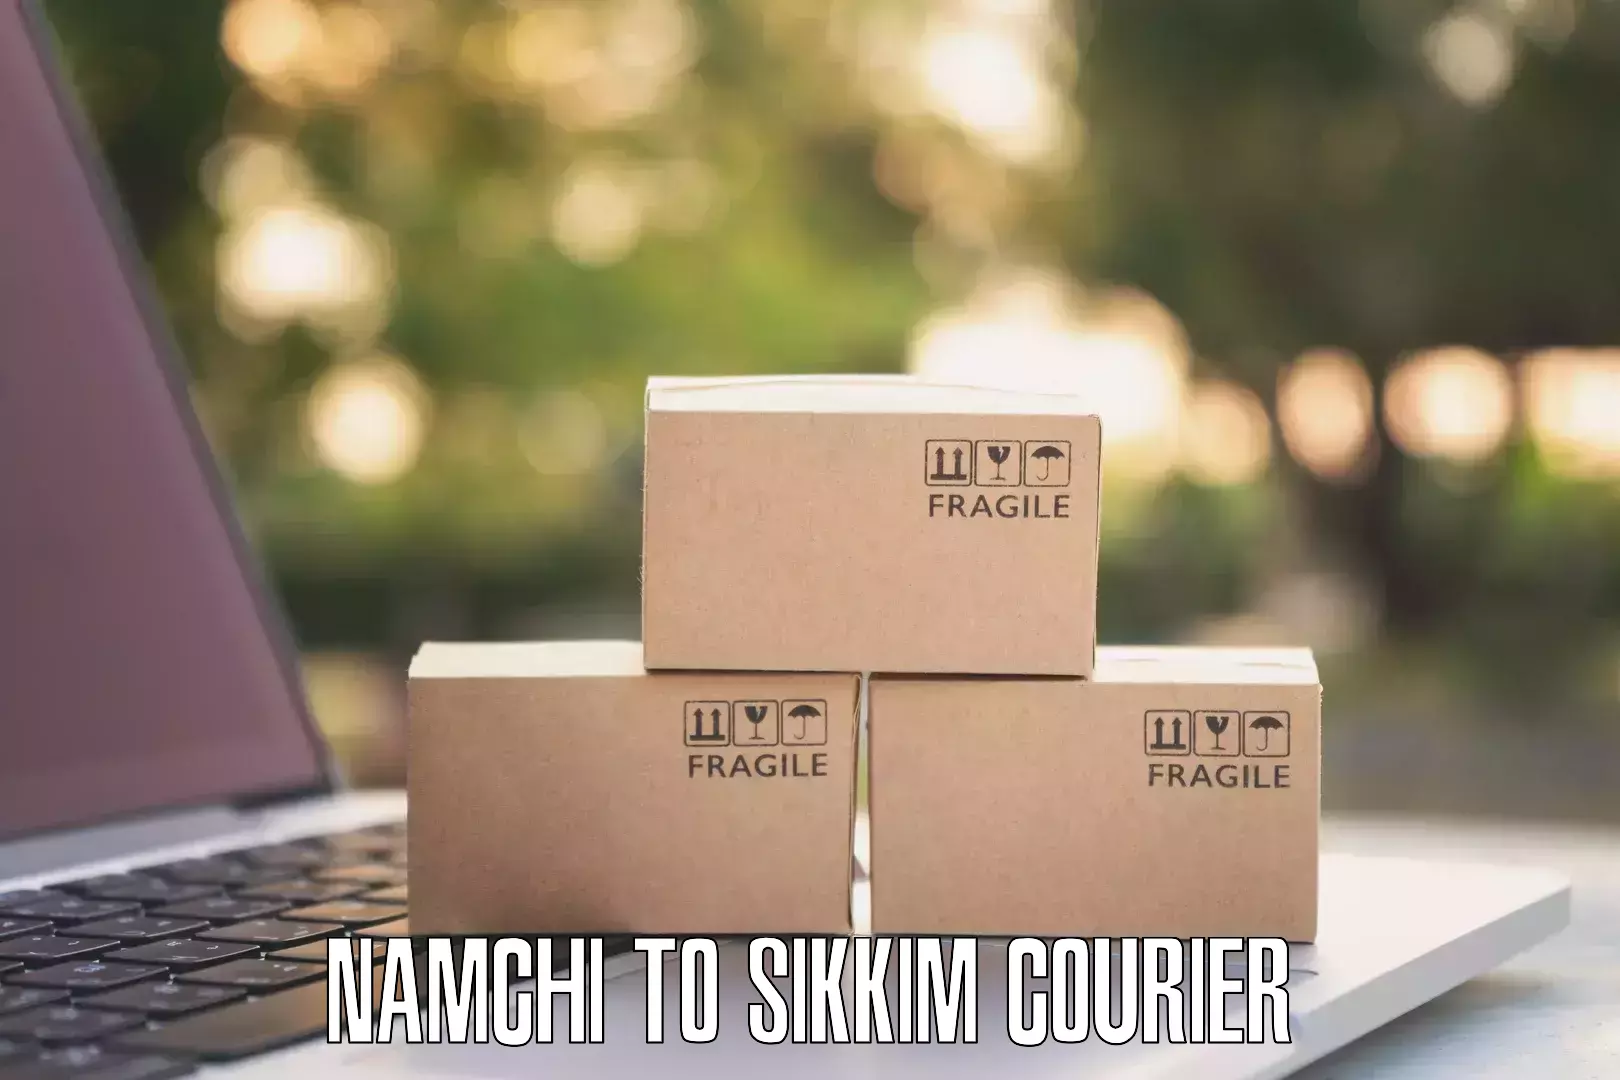 International shipping rates Namchi to Namchi